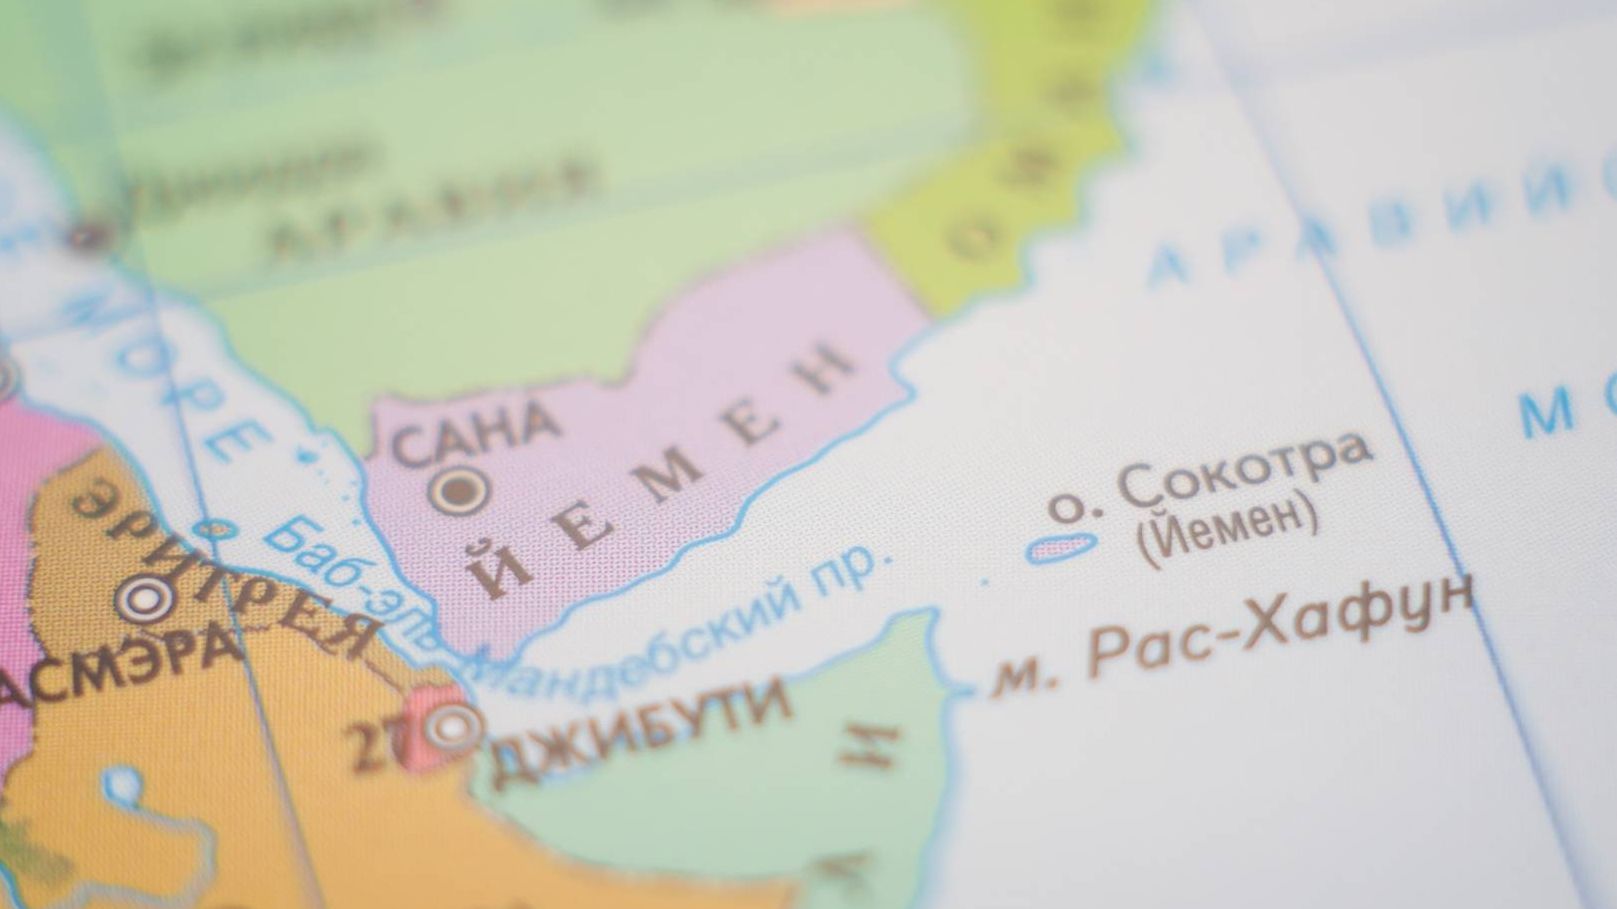 Йемен карта